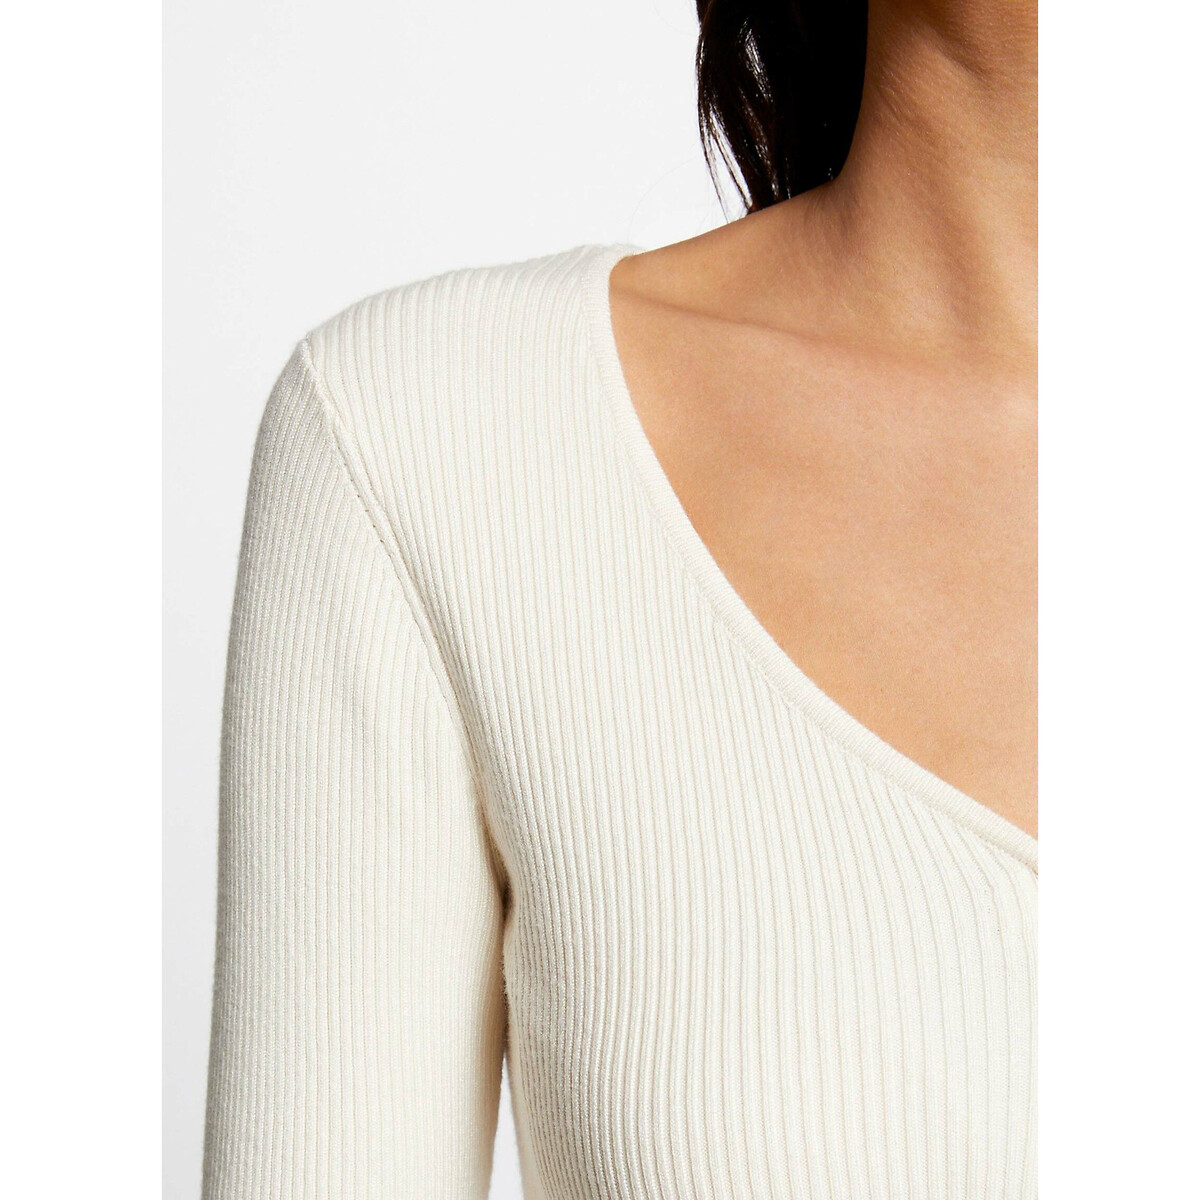 Пуловер рифленый с длинными рукавами вставка на молнии  M белый LaRedoute, размер M - фото 1